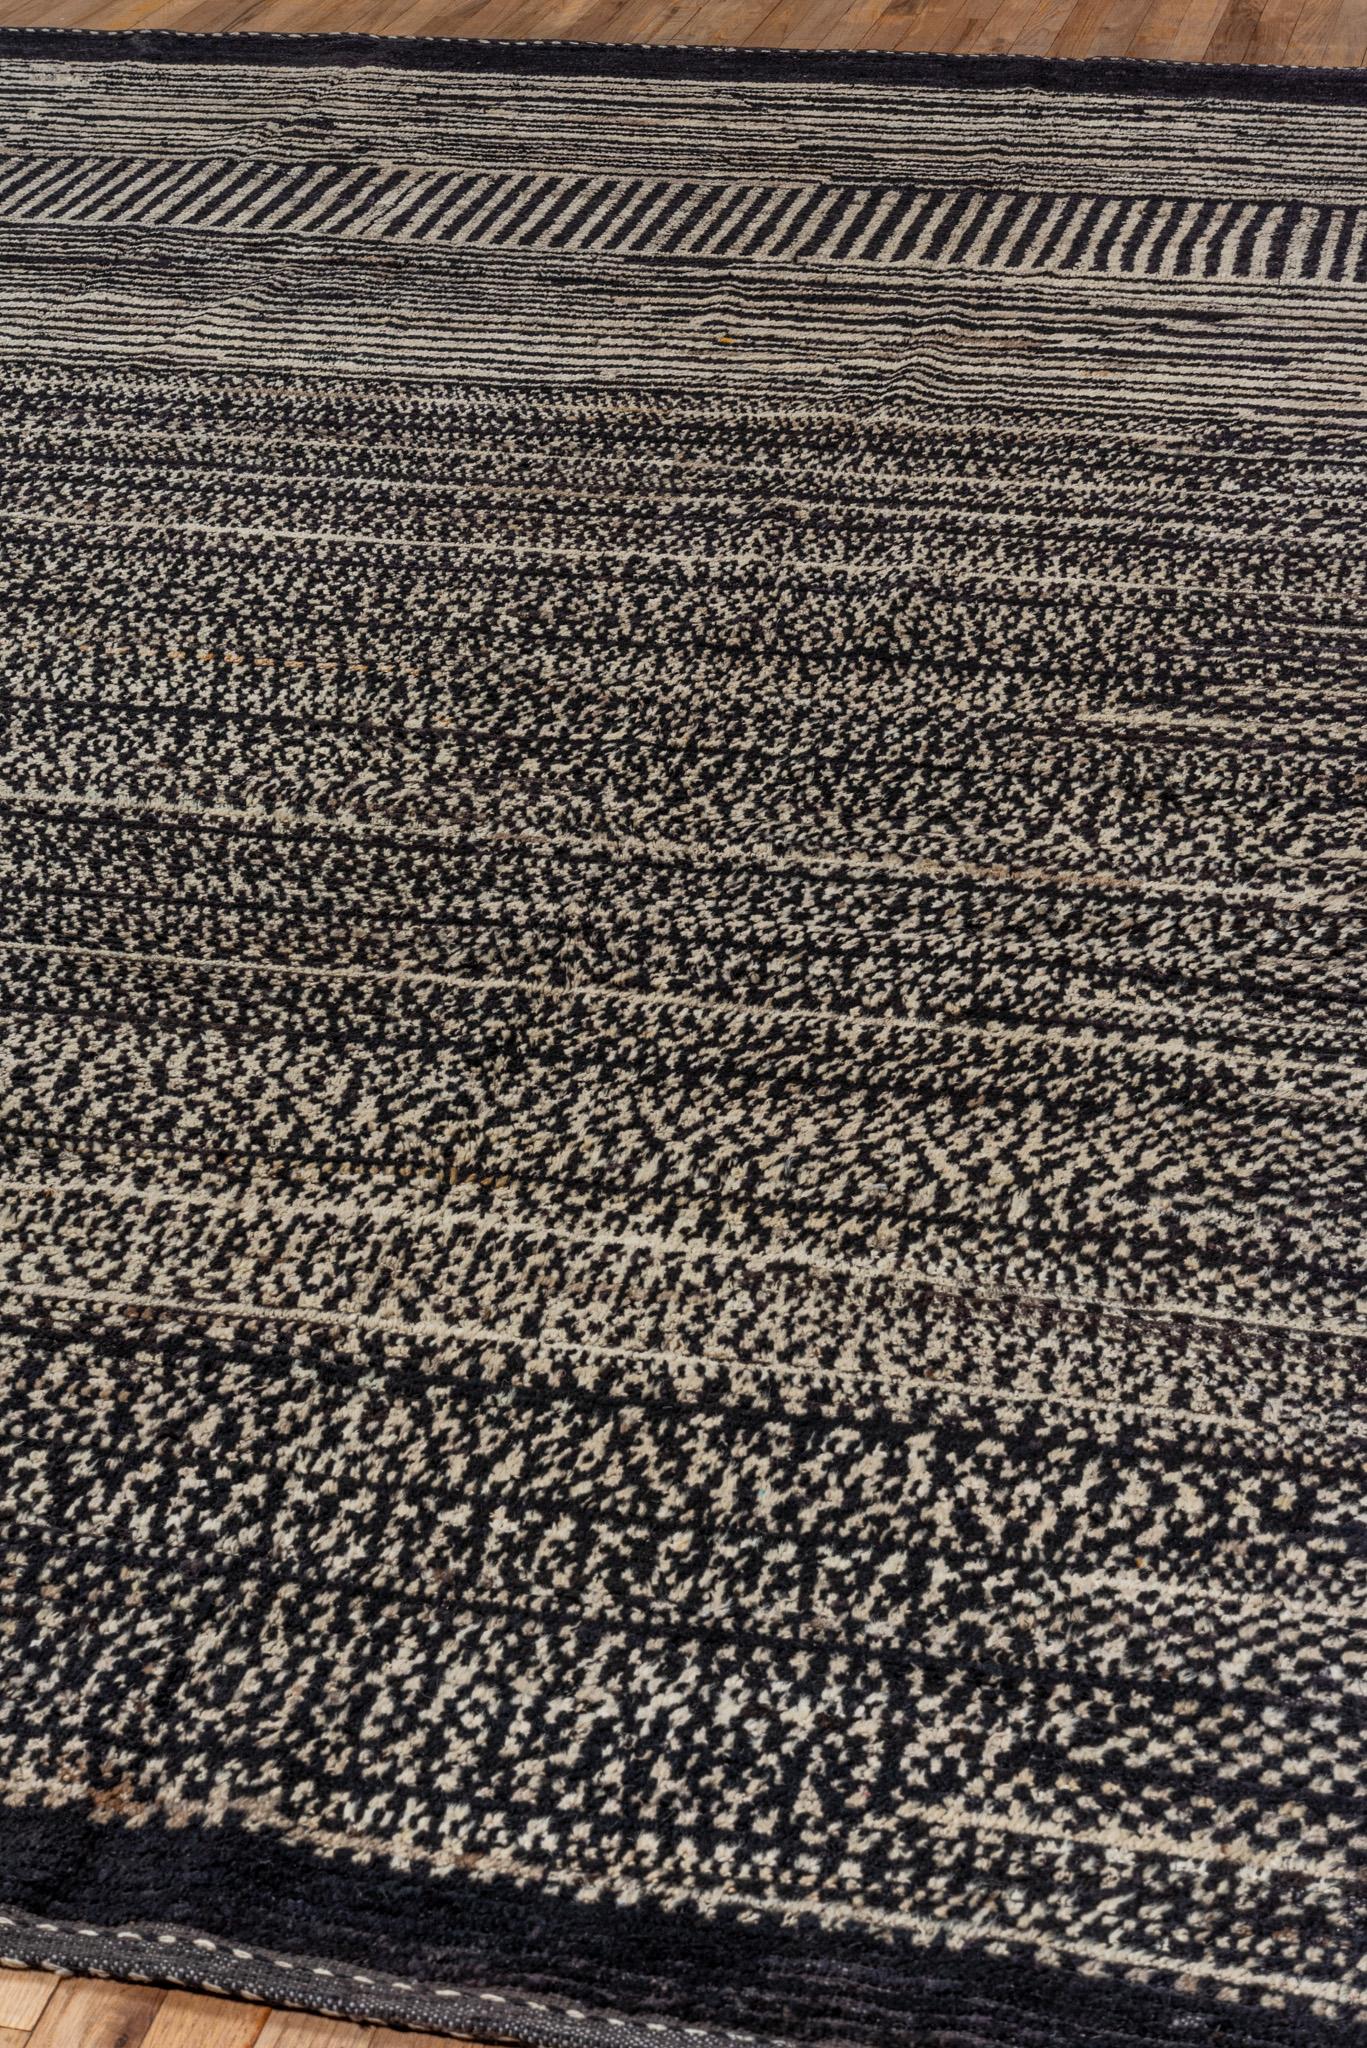 A Contemporary Tulu rug. 100% Wool yarn.